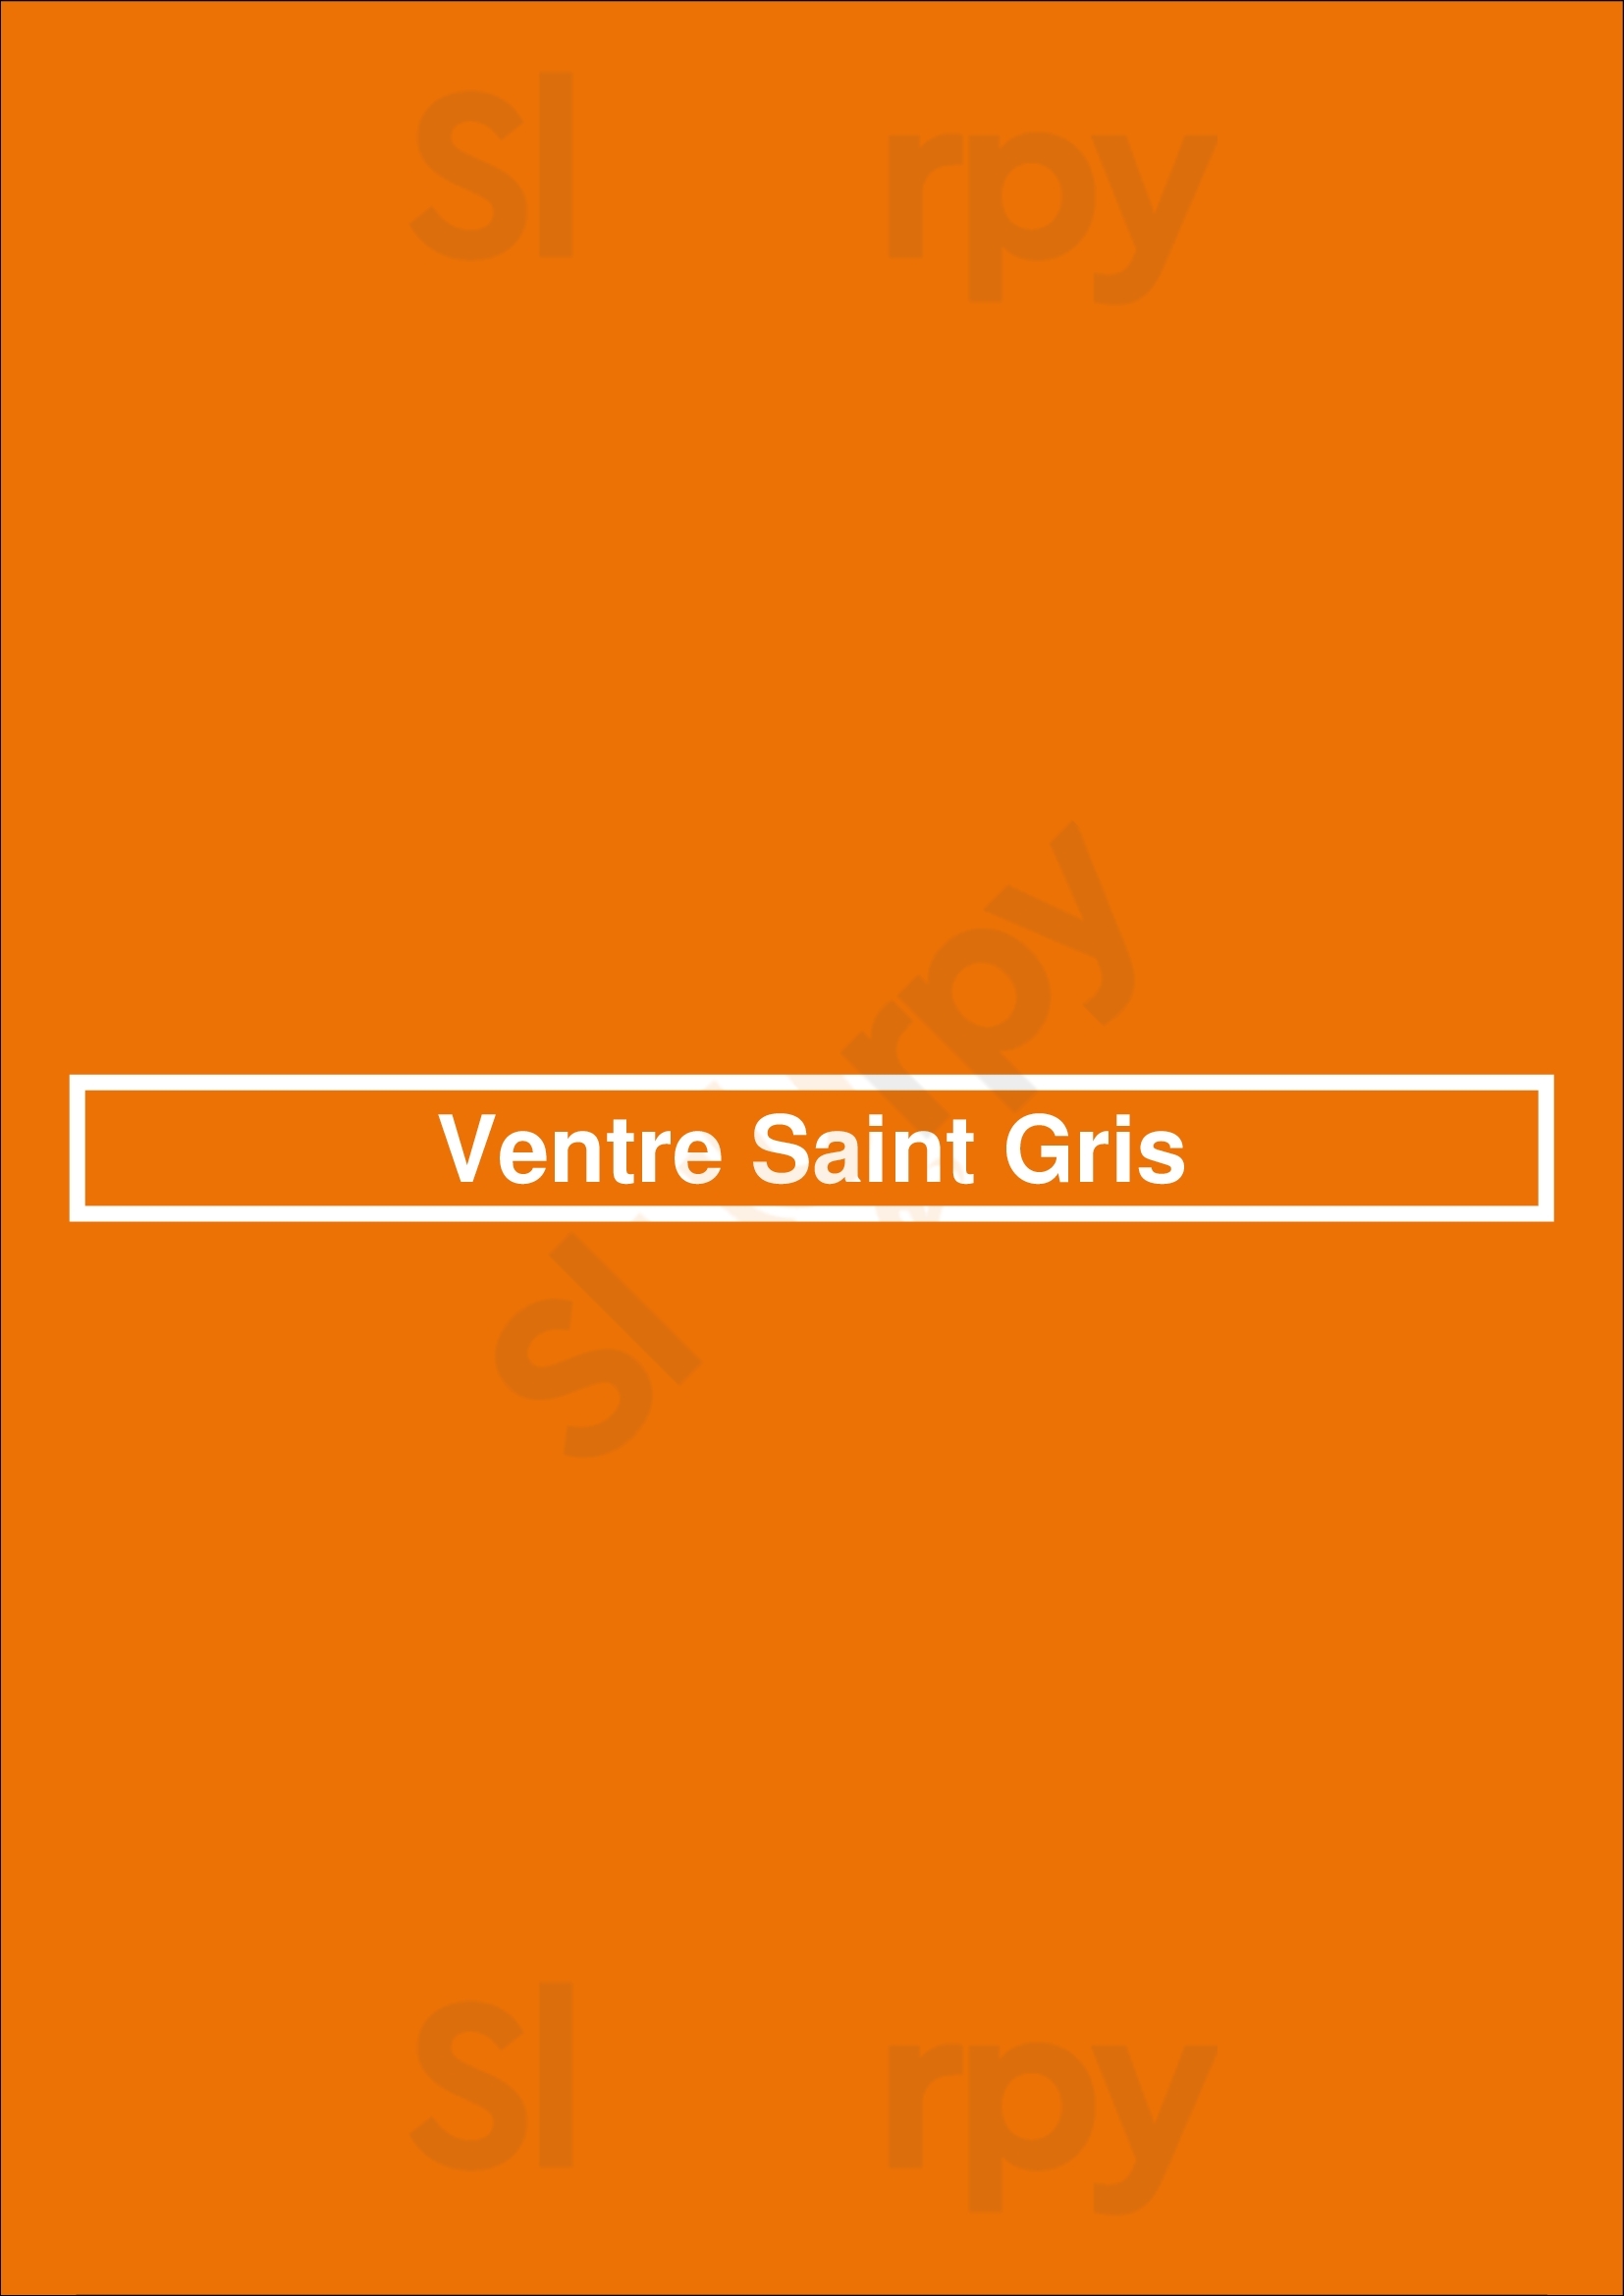 Ventre Saint Gris Bruxelles Menu - 1